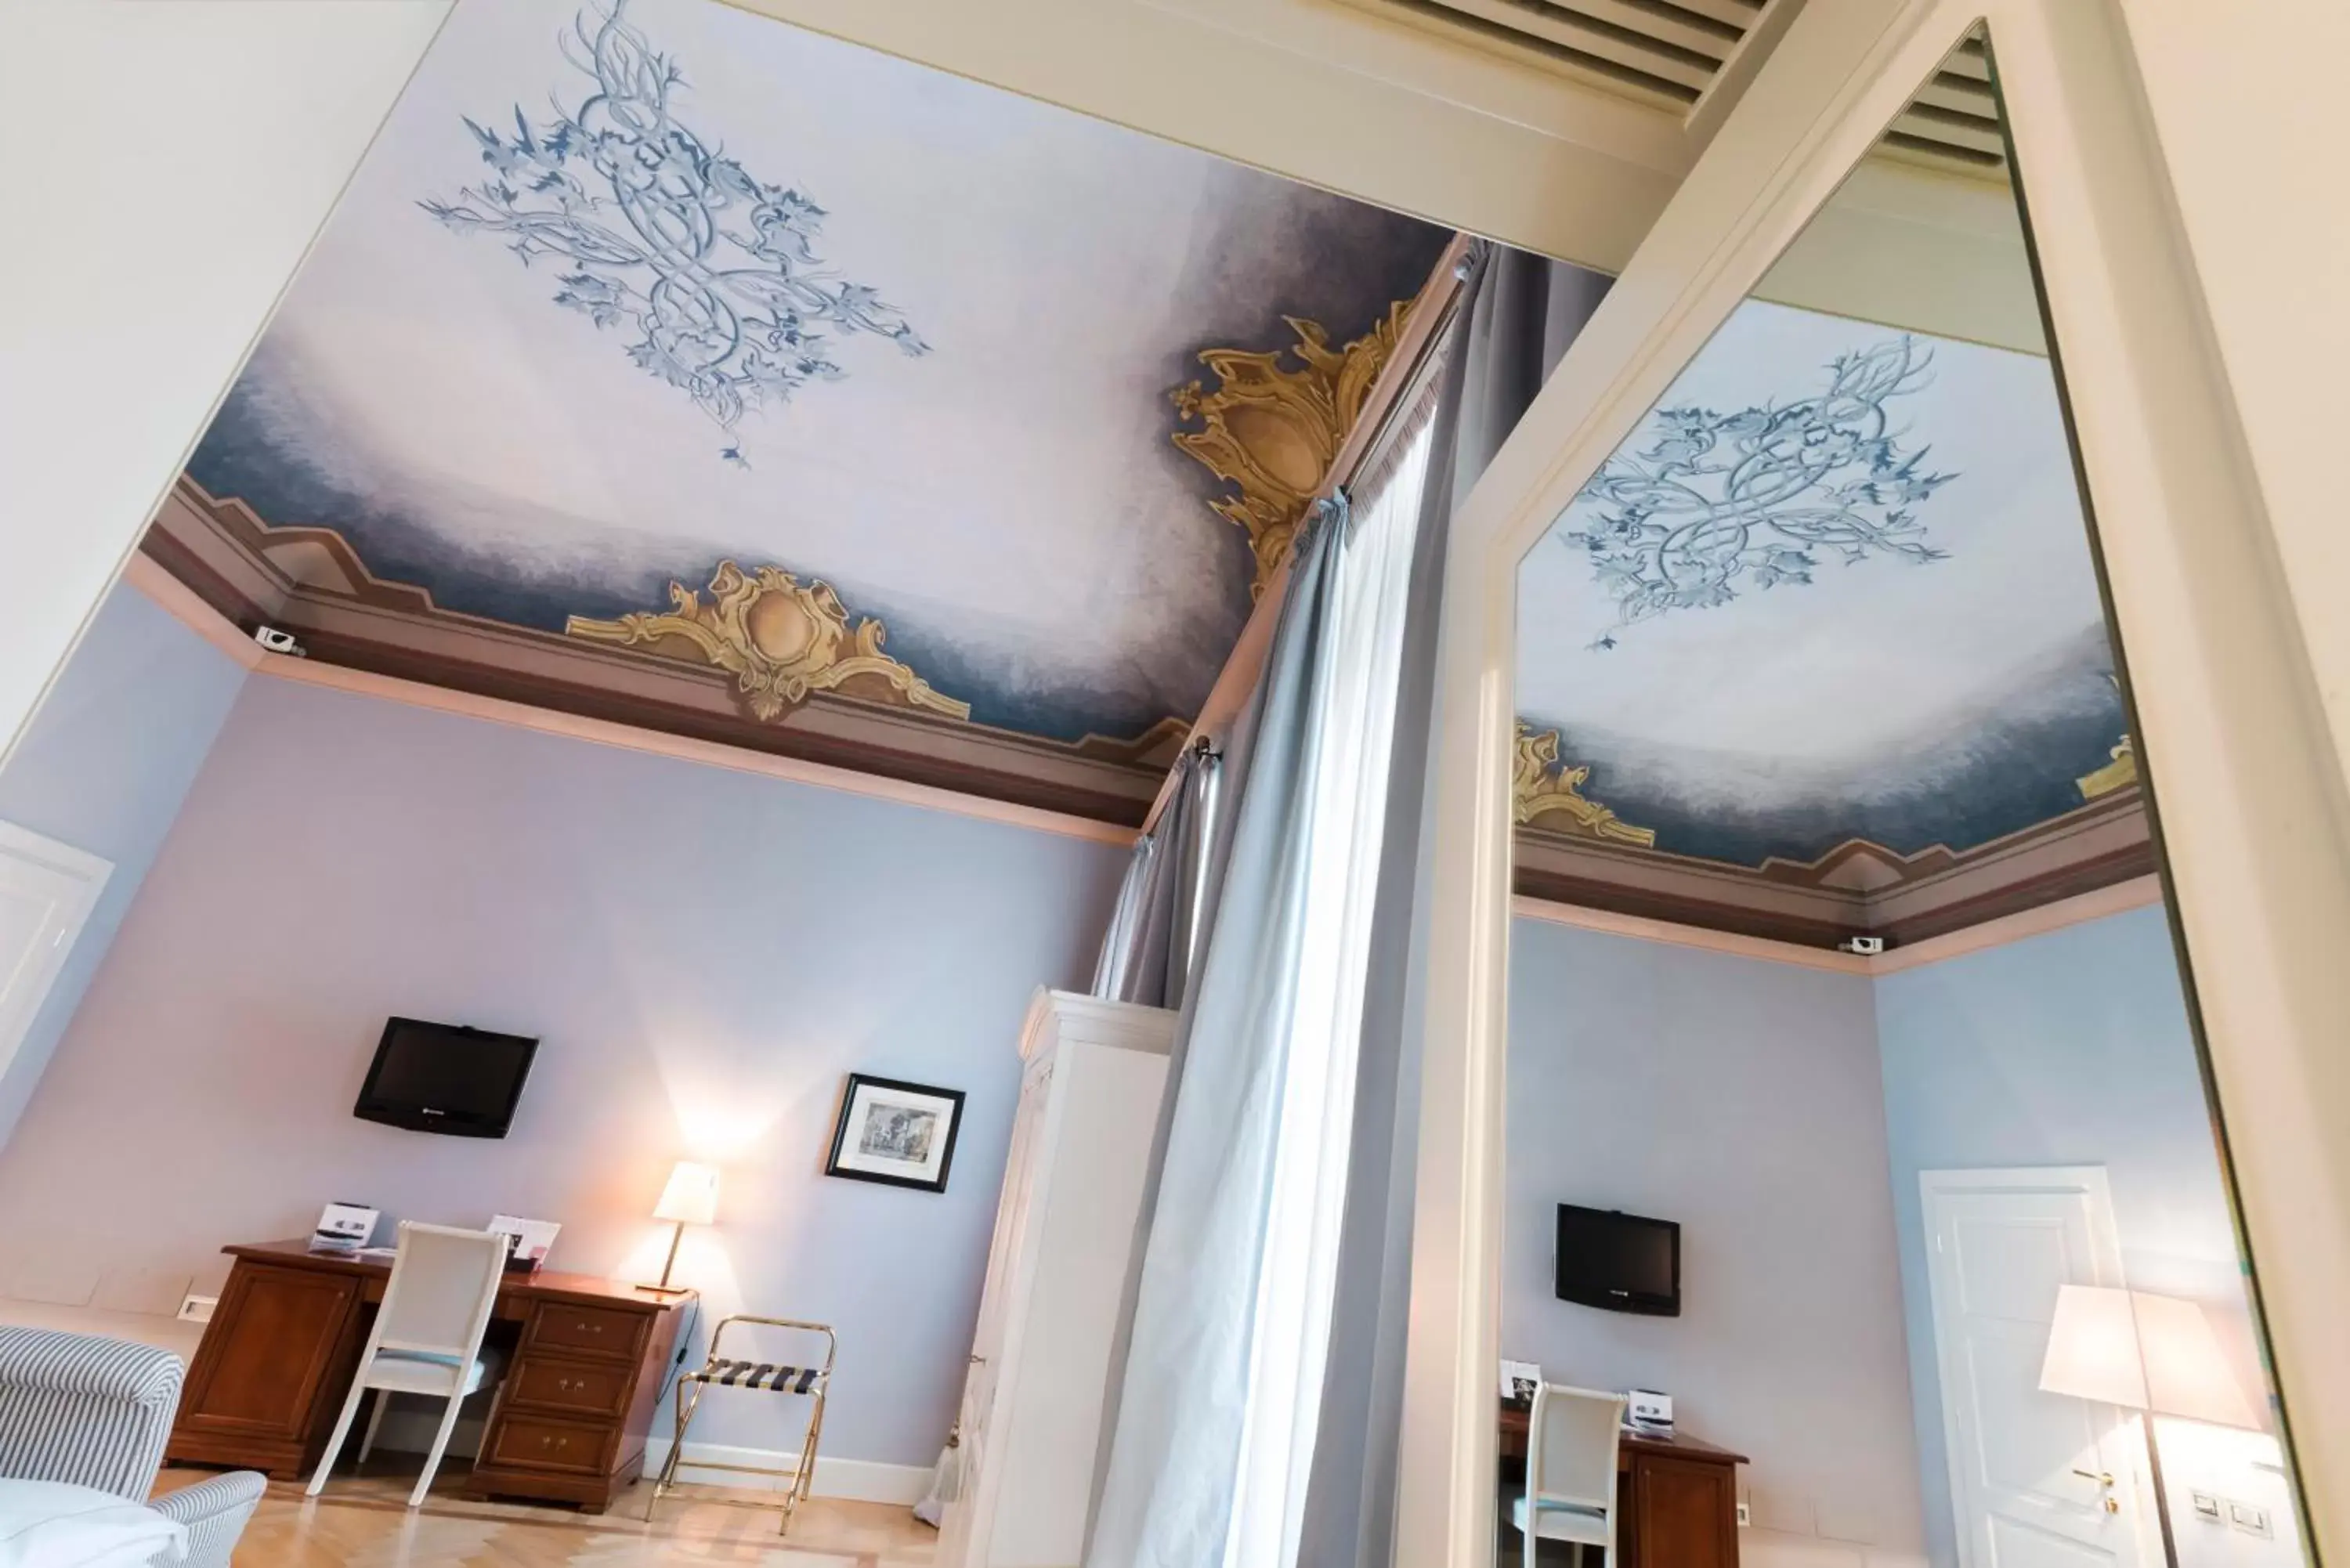 Decorative detail in Grand Hotel Della Posta